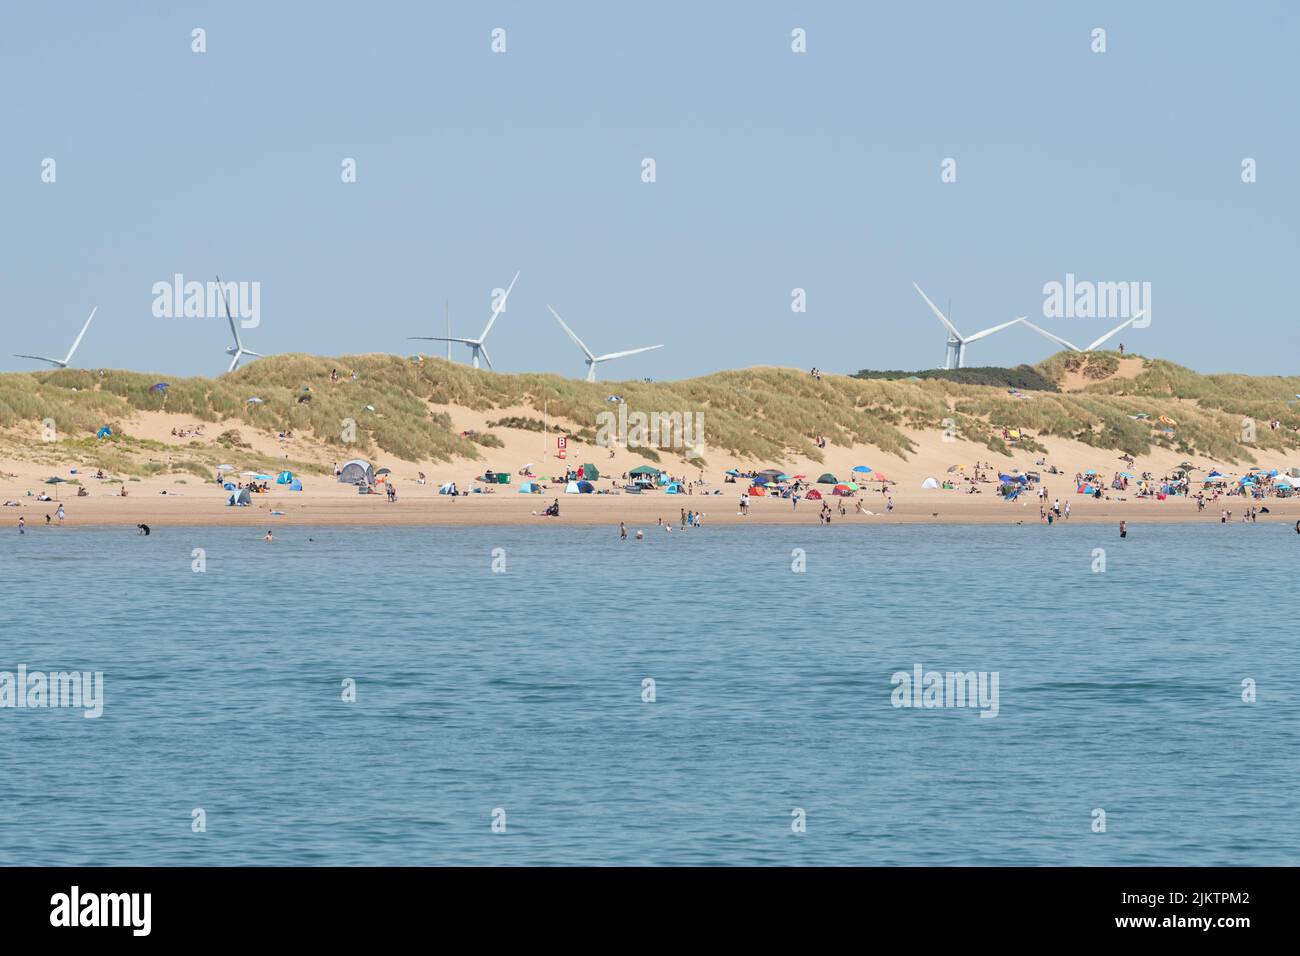 Parque eólico Little Cheyne Court - turbinas de viento visibles detrás de las dunas de arena en Camber Sands, East Sussex, Inglaterra, Reino Unido Foto de stock